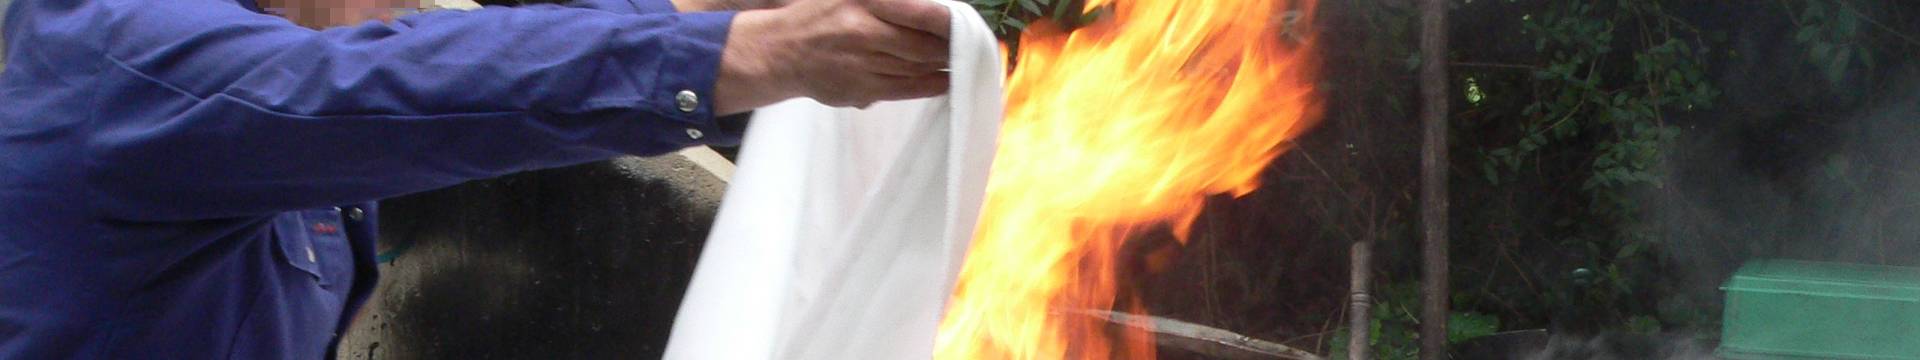 Um homem está usando um cobertor de fogo para extinguir o fogo.